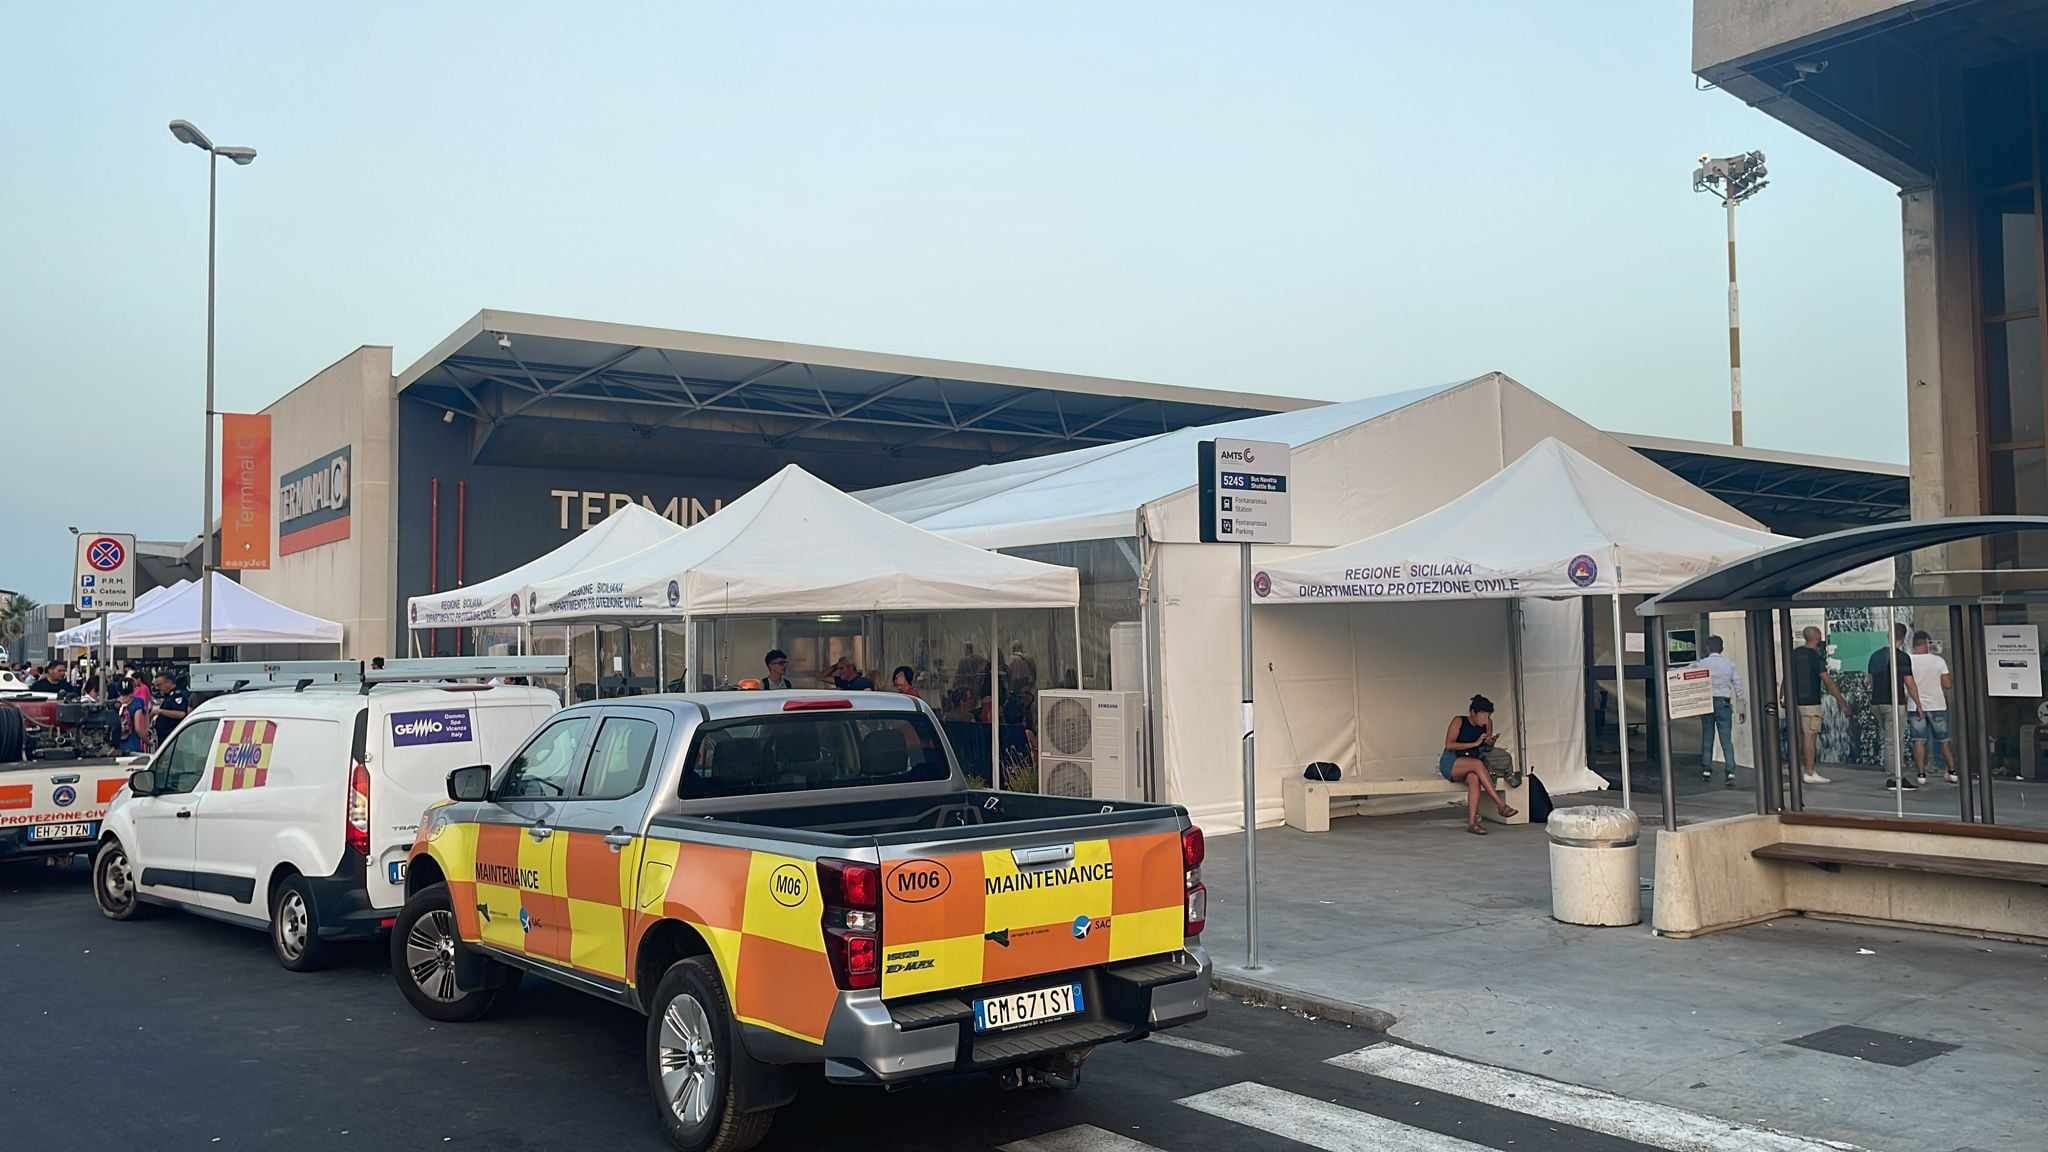 Aeroporto Catania, operativa tensostruttura a supporto Terminal C